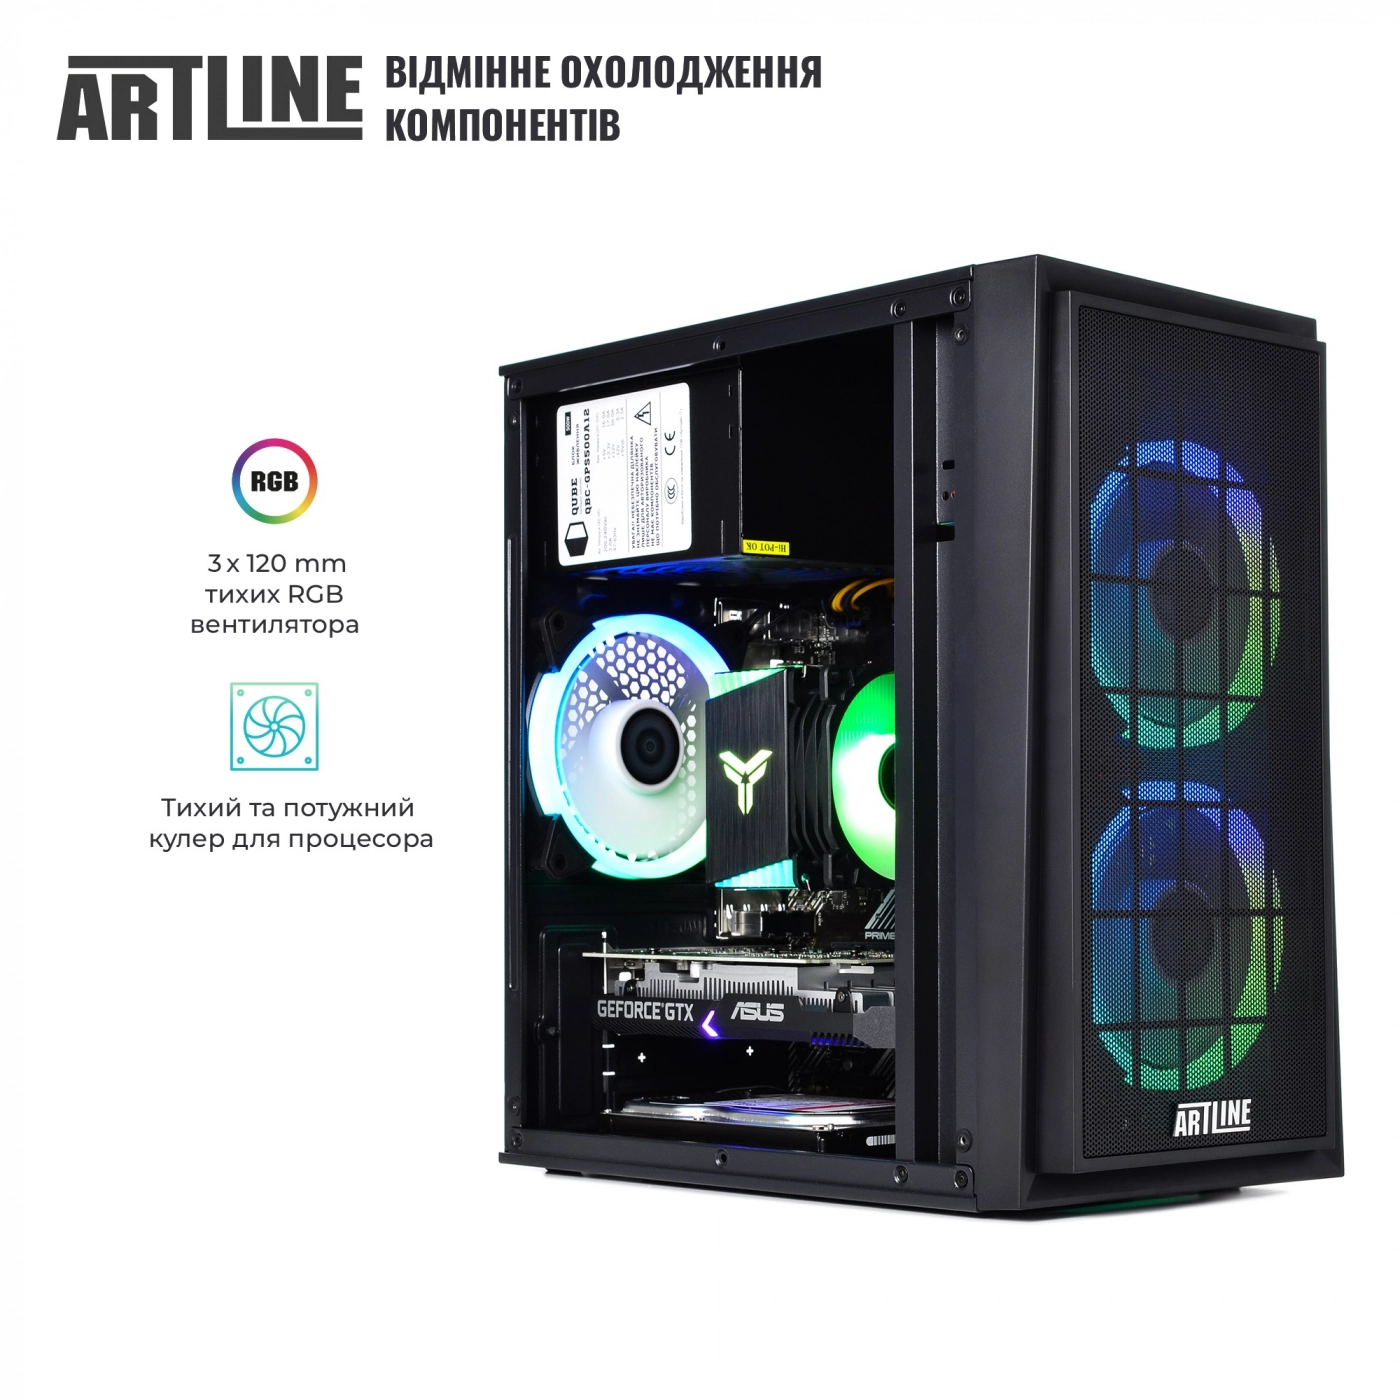 Купить Компьютер ARTLINE Gaming X42v01 - фото 2